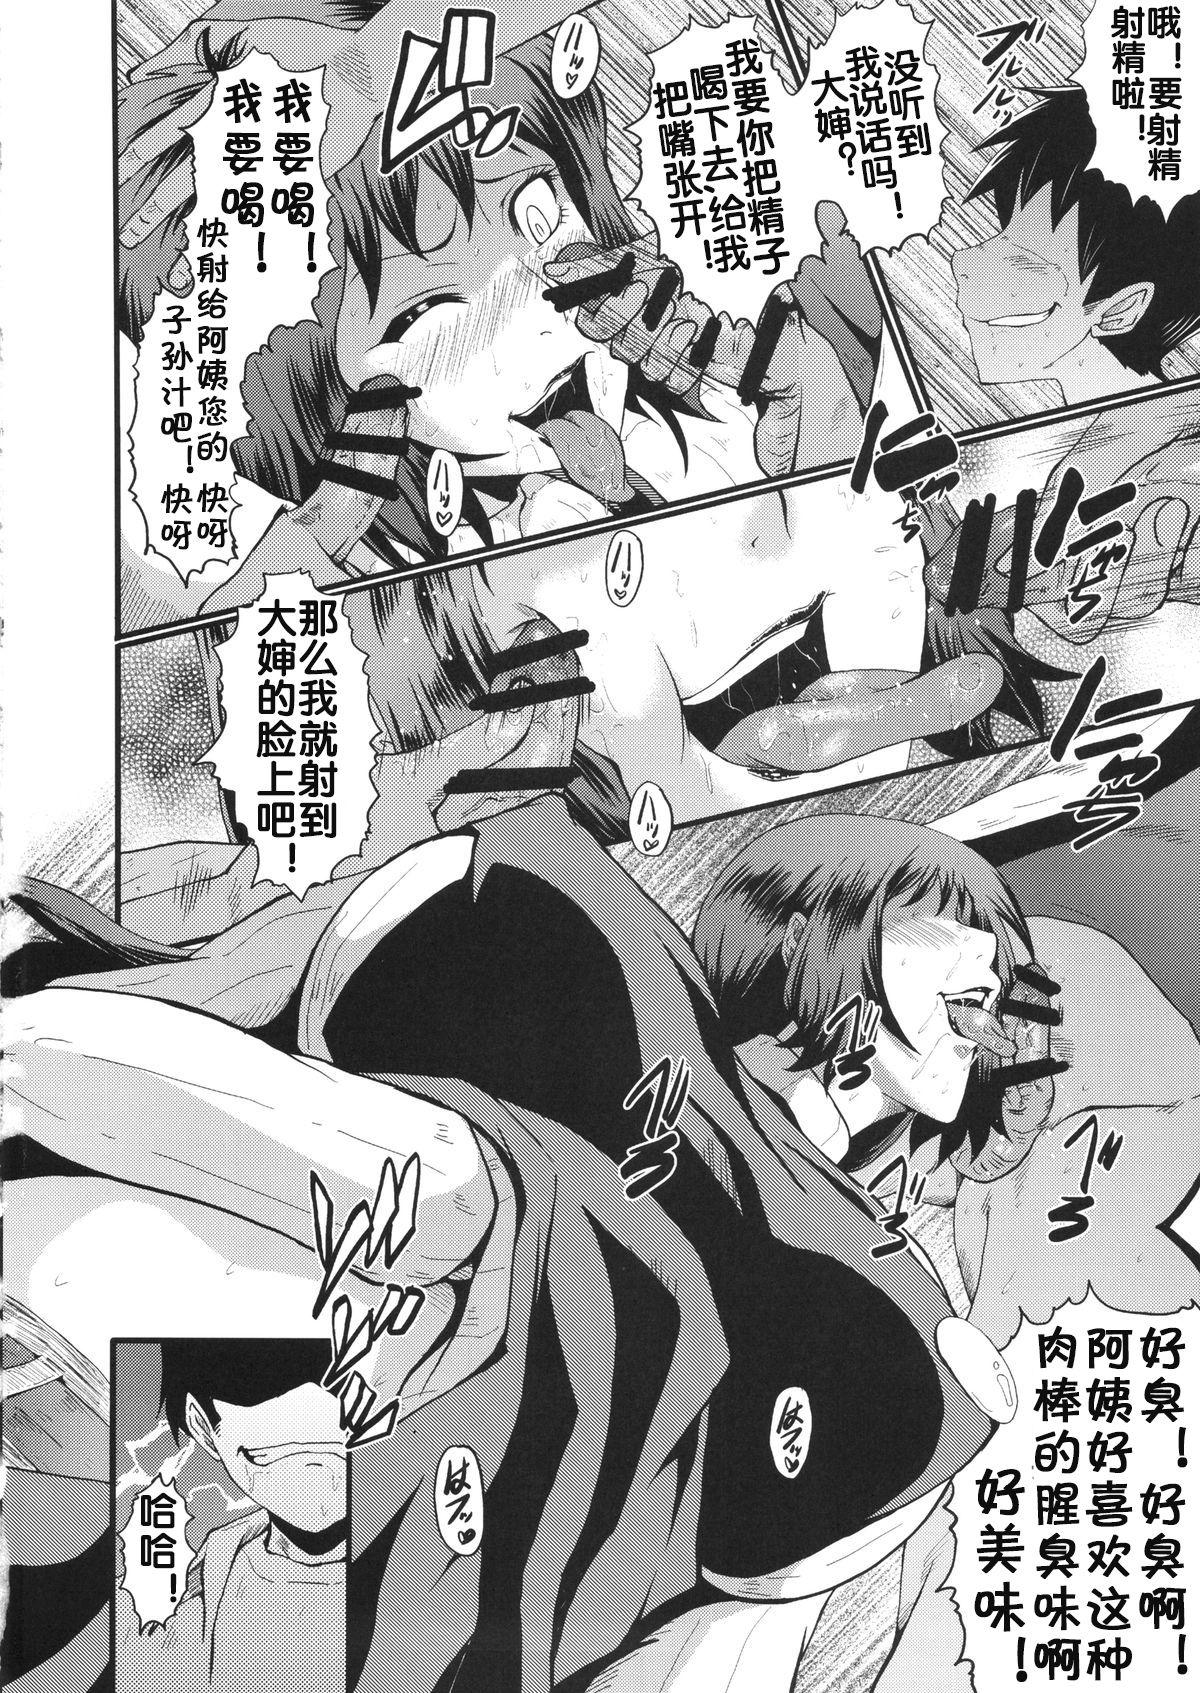 Masturbates Urabambi Vol. 49 Kaa-san wa Boku ga Shiranai Uchi ni Omanko ni DoHamari shite mashita. - Gundam build fighters Thai - Page 9